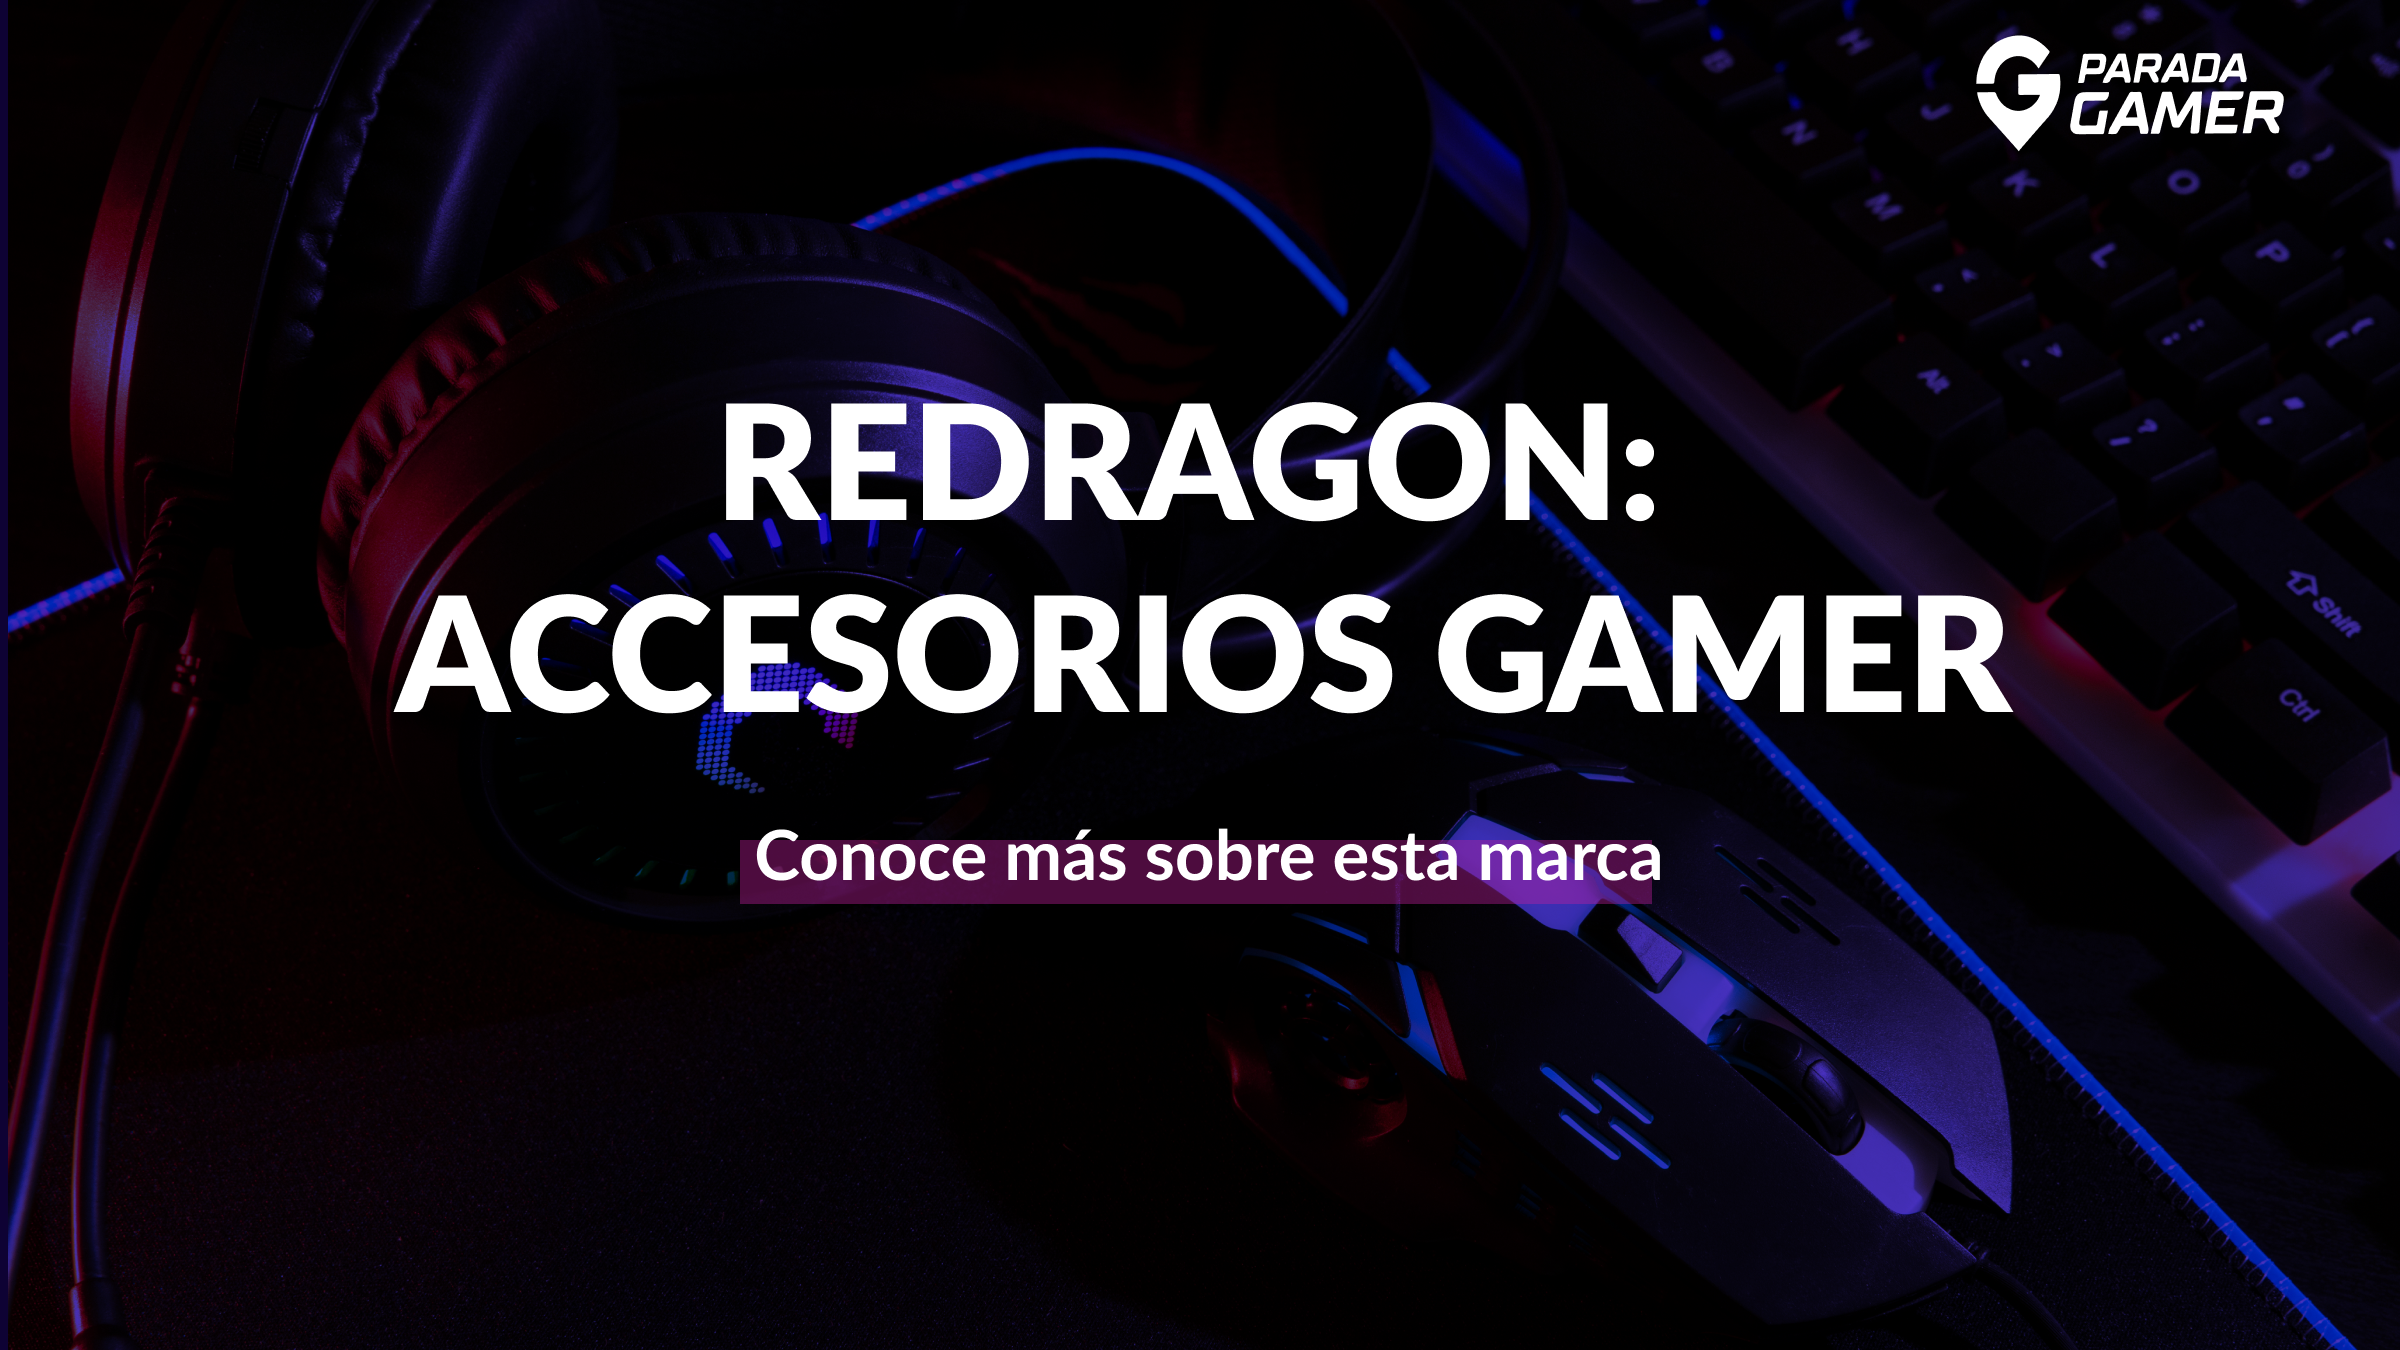 Redragon: La revolución de los accesorios gamer - Parada Gamer